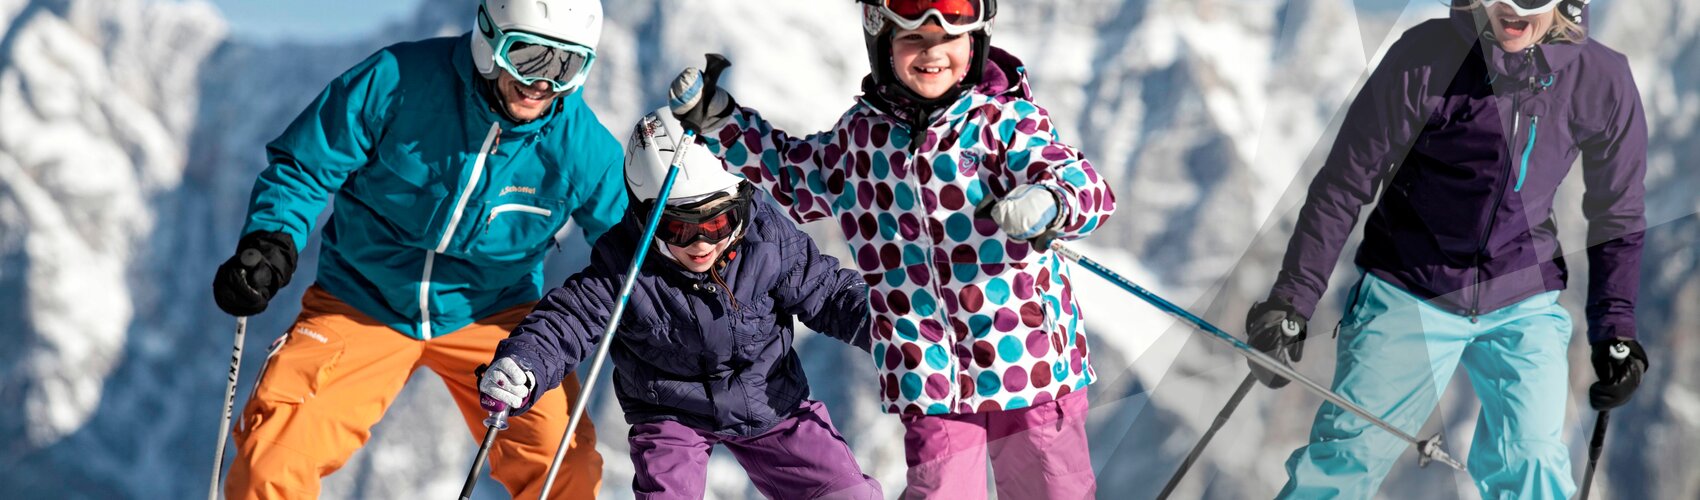 Familie fährt Ski in Lermoos | © Tiroler Zugspitz Arena | U. Wiesmeier